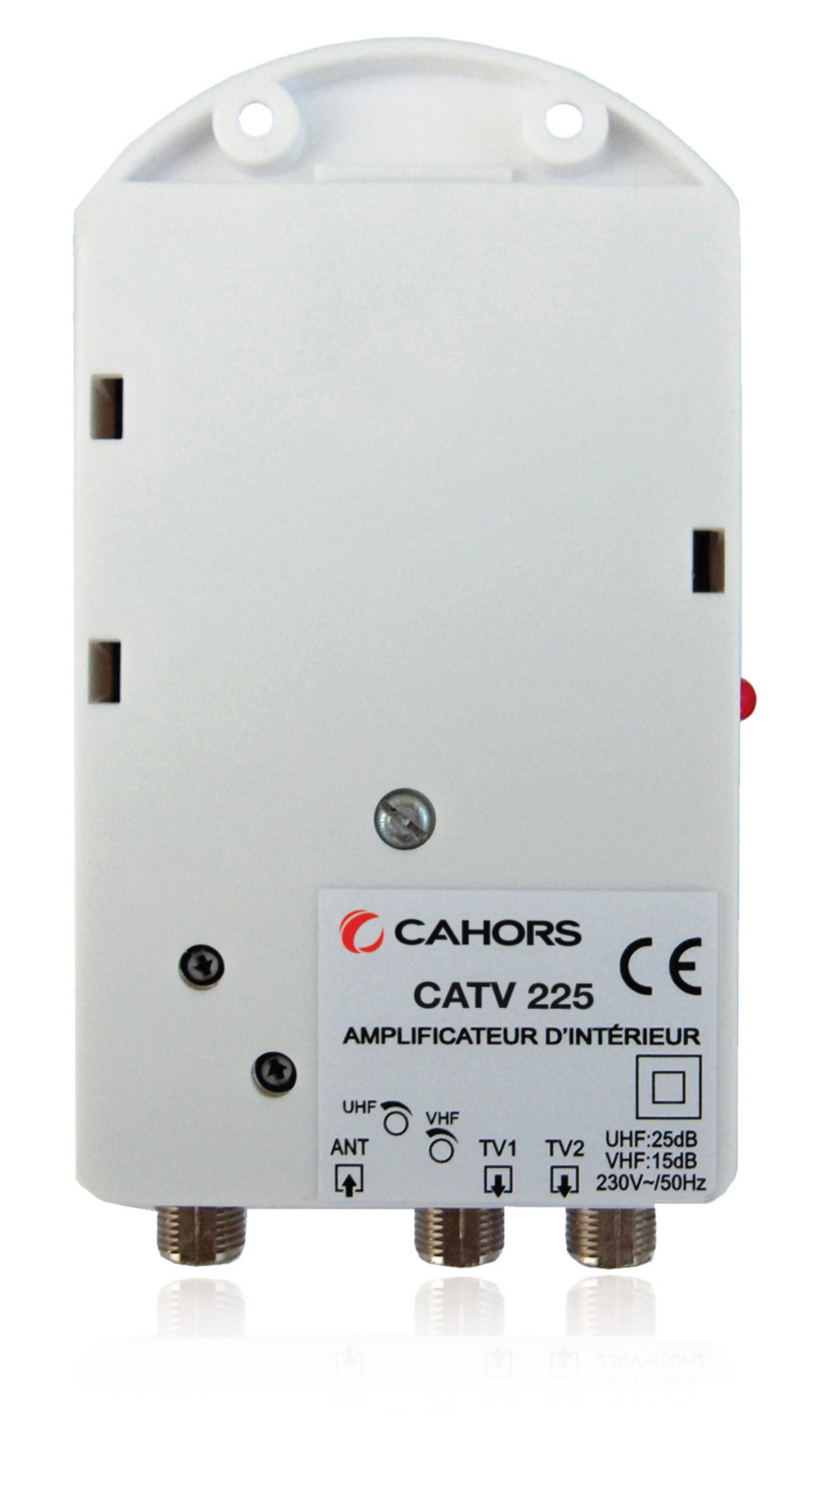 Amplificateur d'intérieur CATV 225 5G Cahors